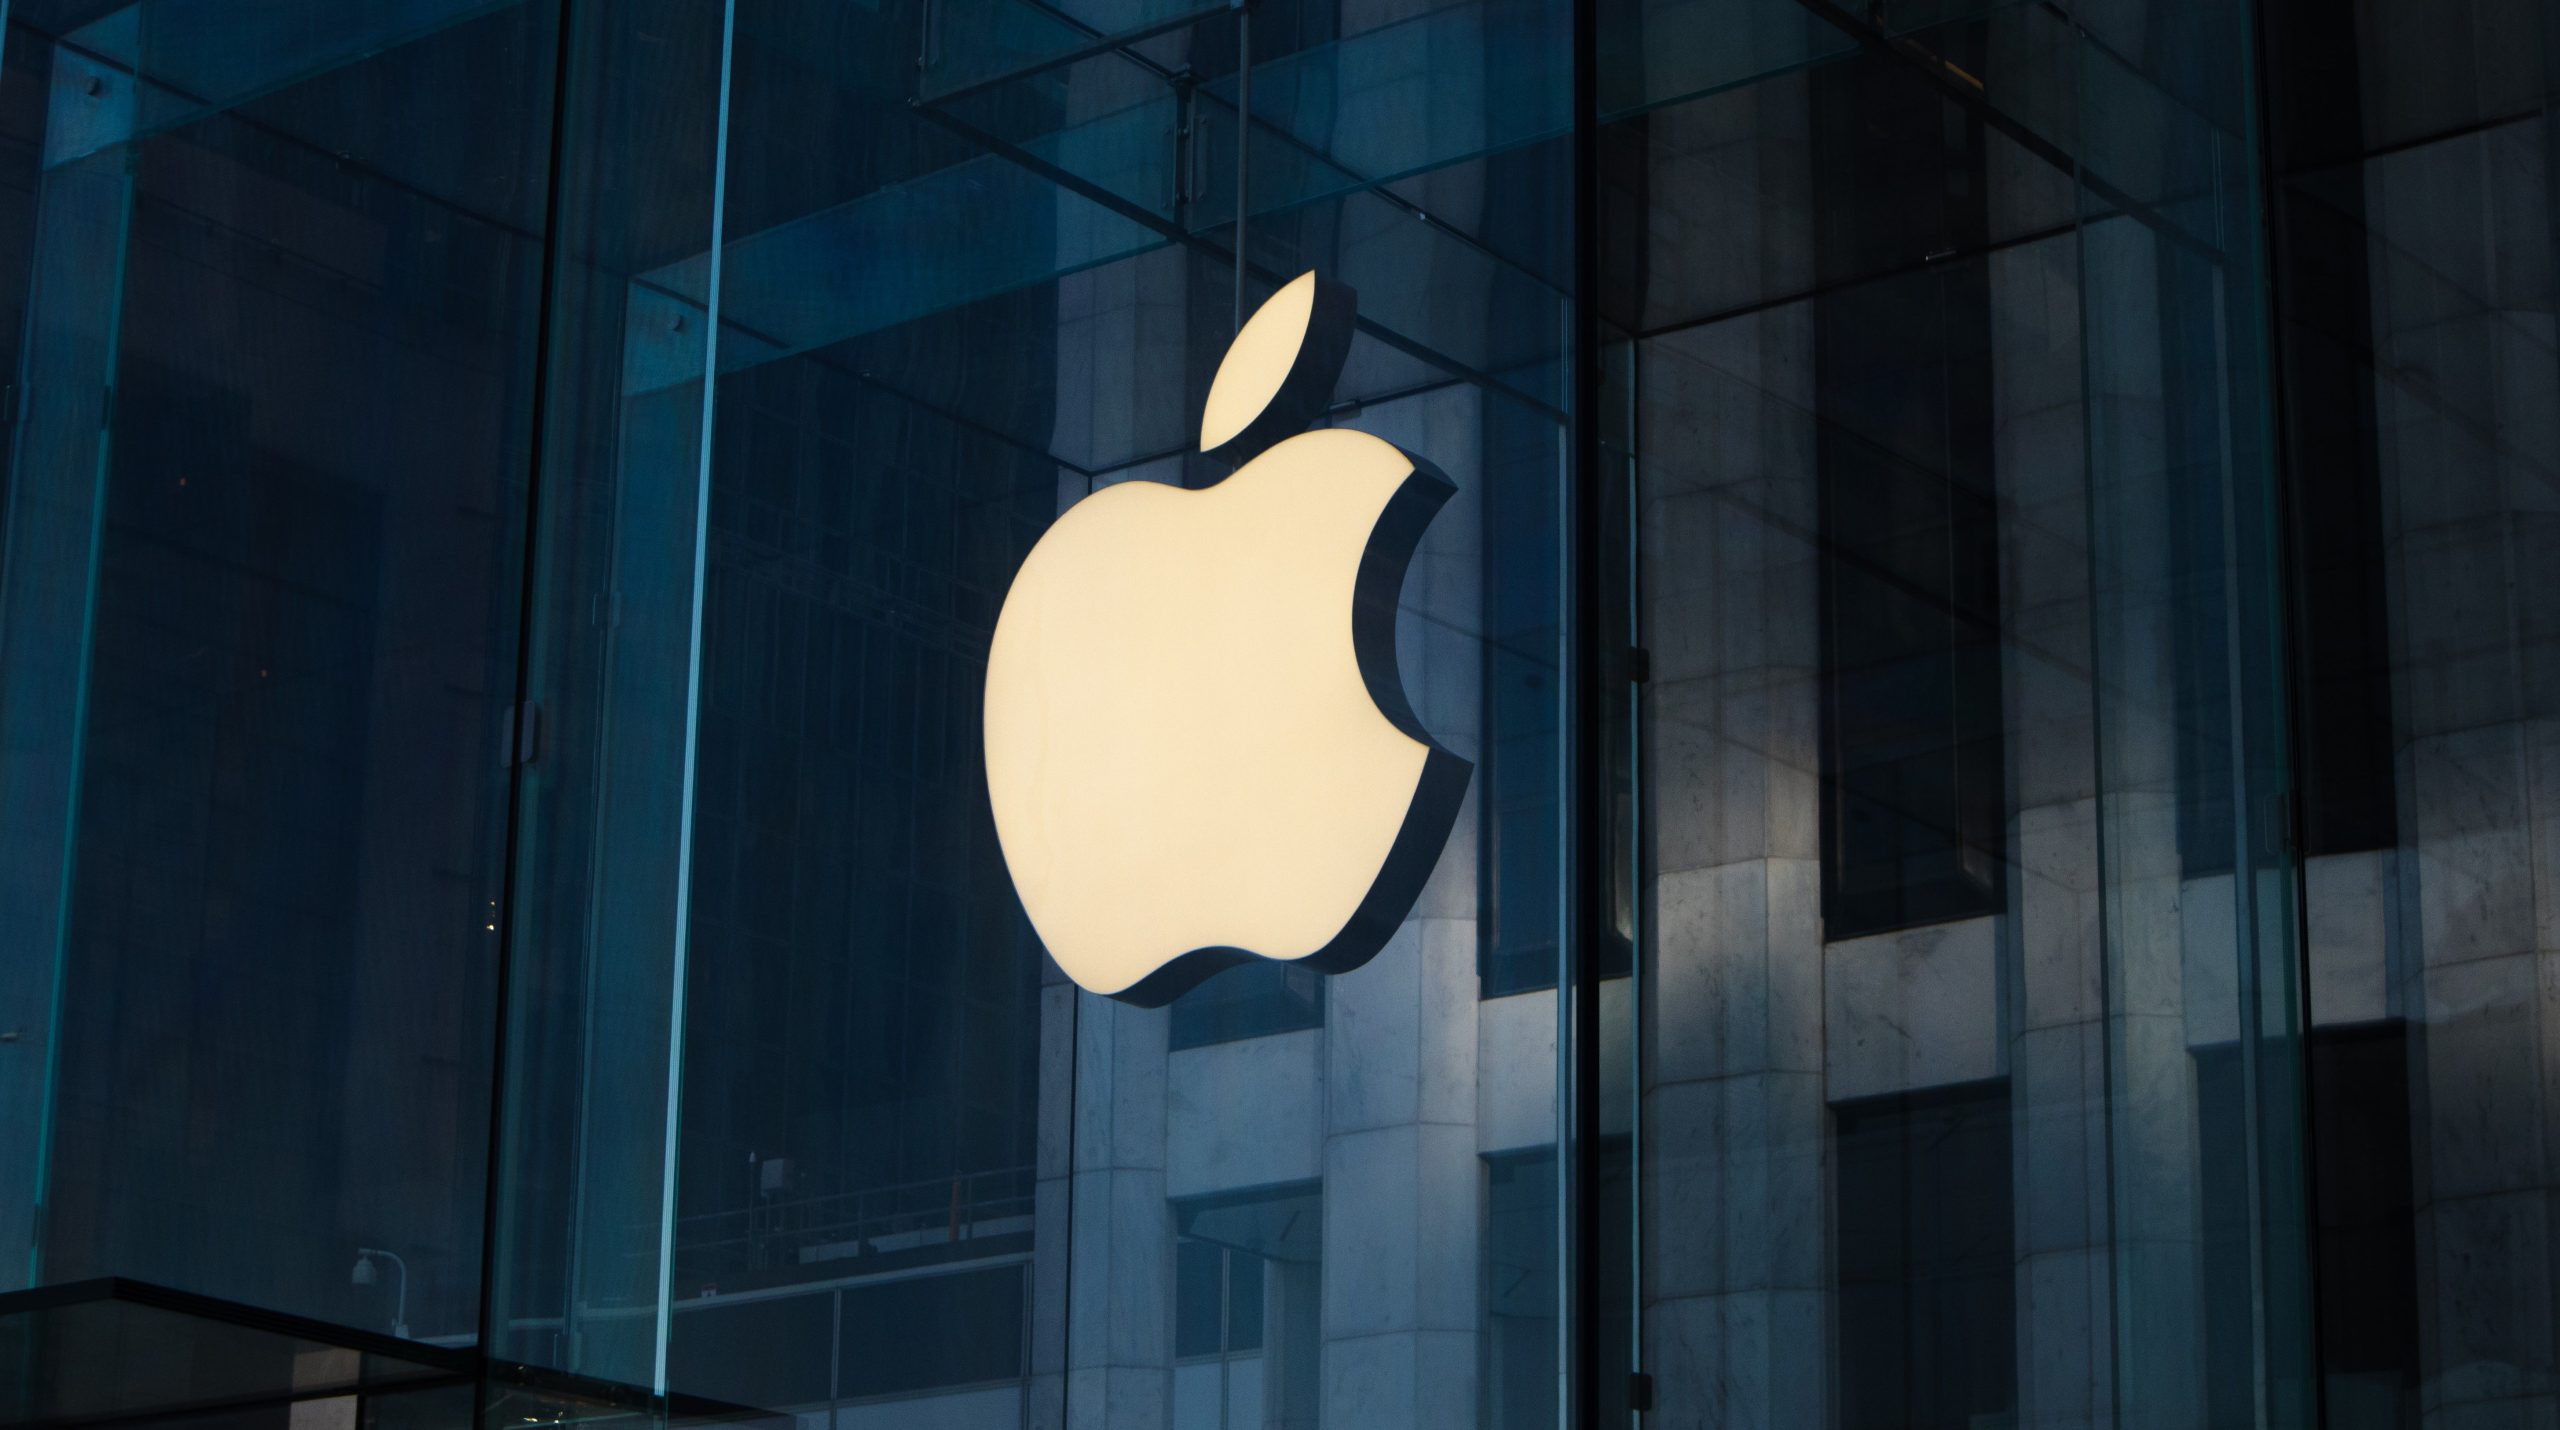 The Apple logo on a building facade.